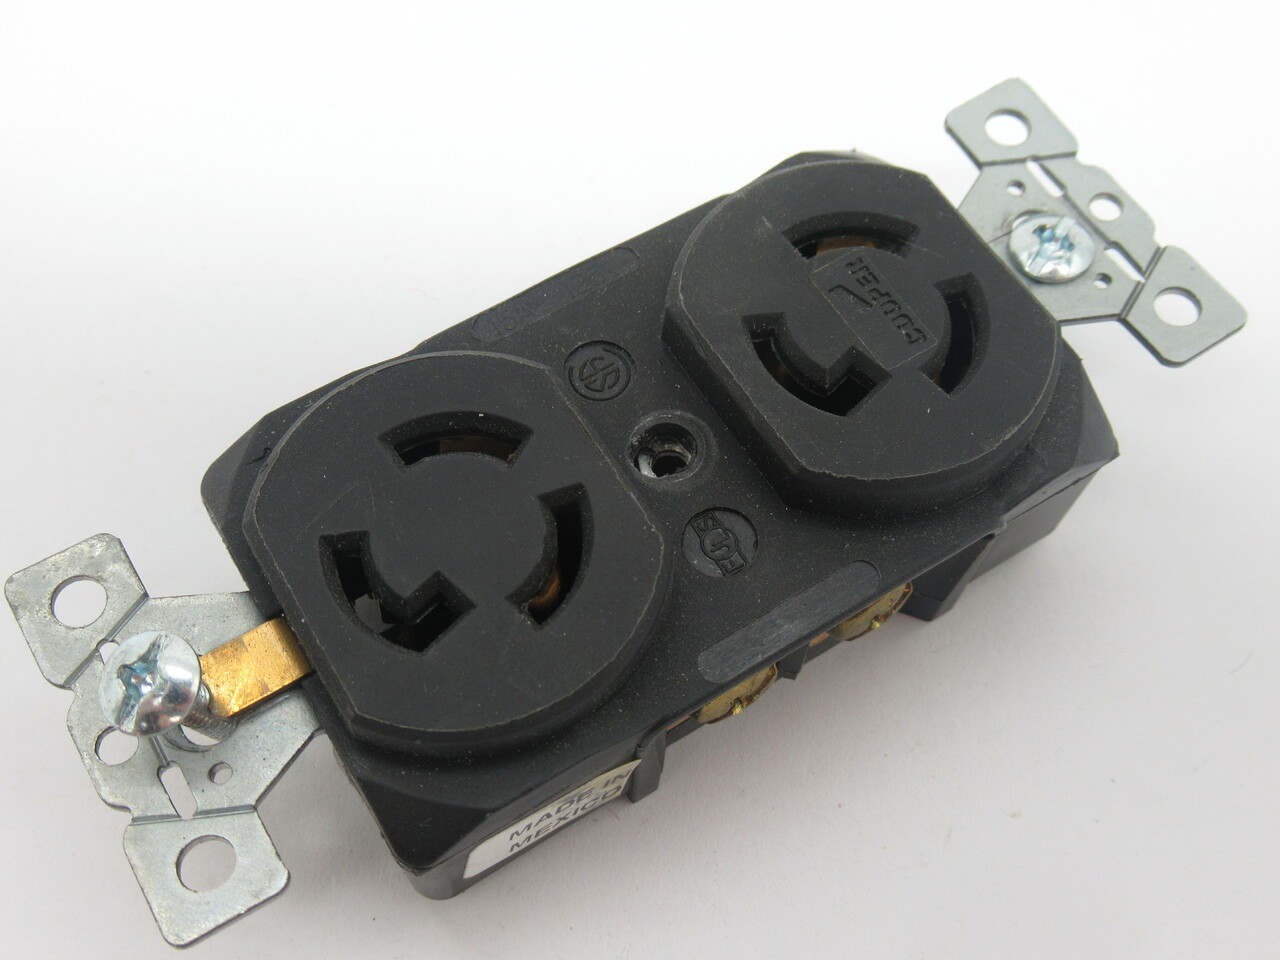 Cooper L5-15R Twist Lock Receptacle Duplex Black 15A 125V 4700 USED